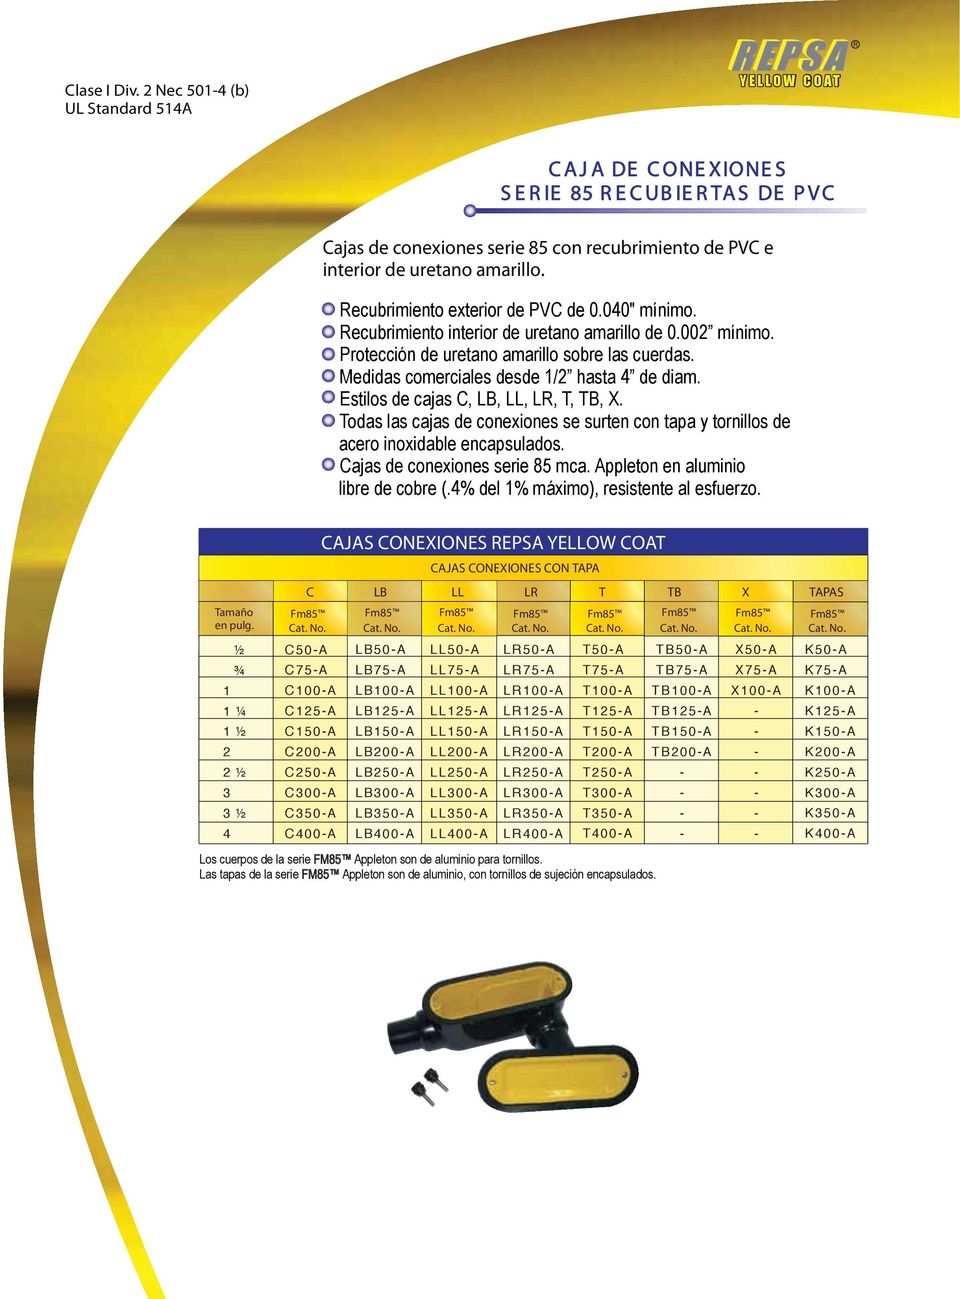 Recubrimiento exterior de PVC de 0.00" mínimo. Recubrimiento interior de uretano amarillo de 0.00 mínimo. Protección de uretano amarillo sobre las cuerdas. Medidas comerciales desde / hasta de diam.